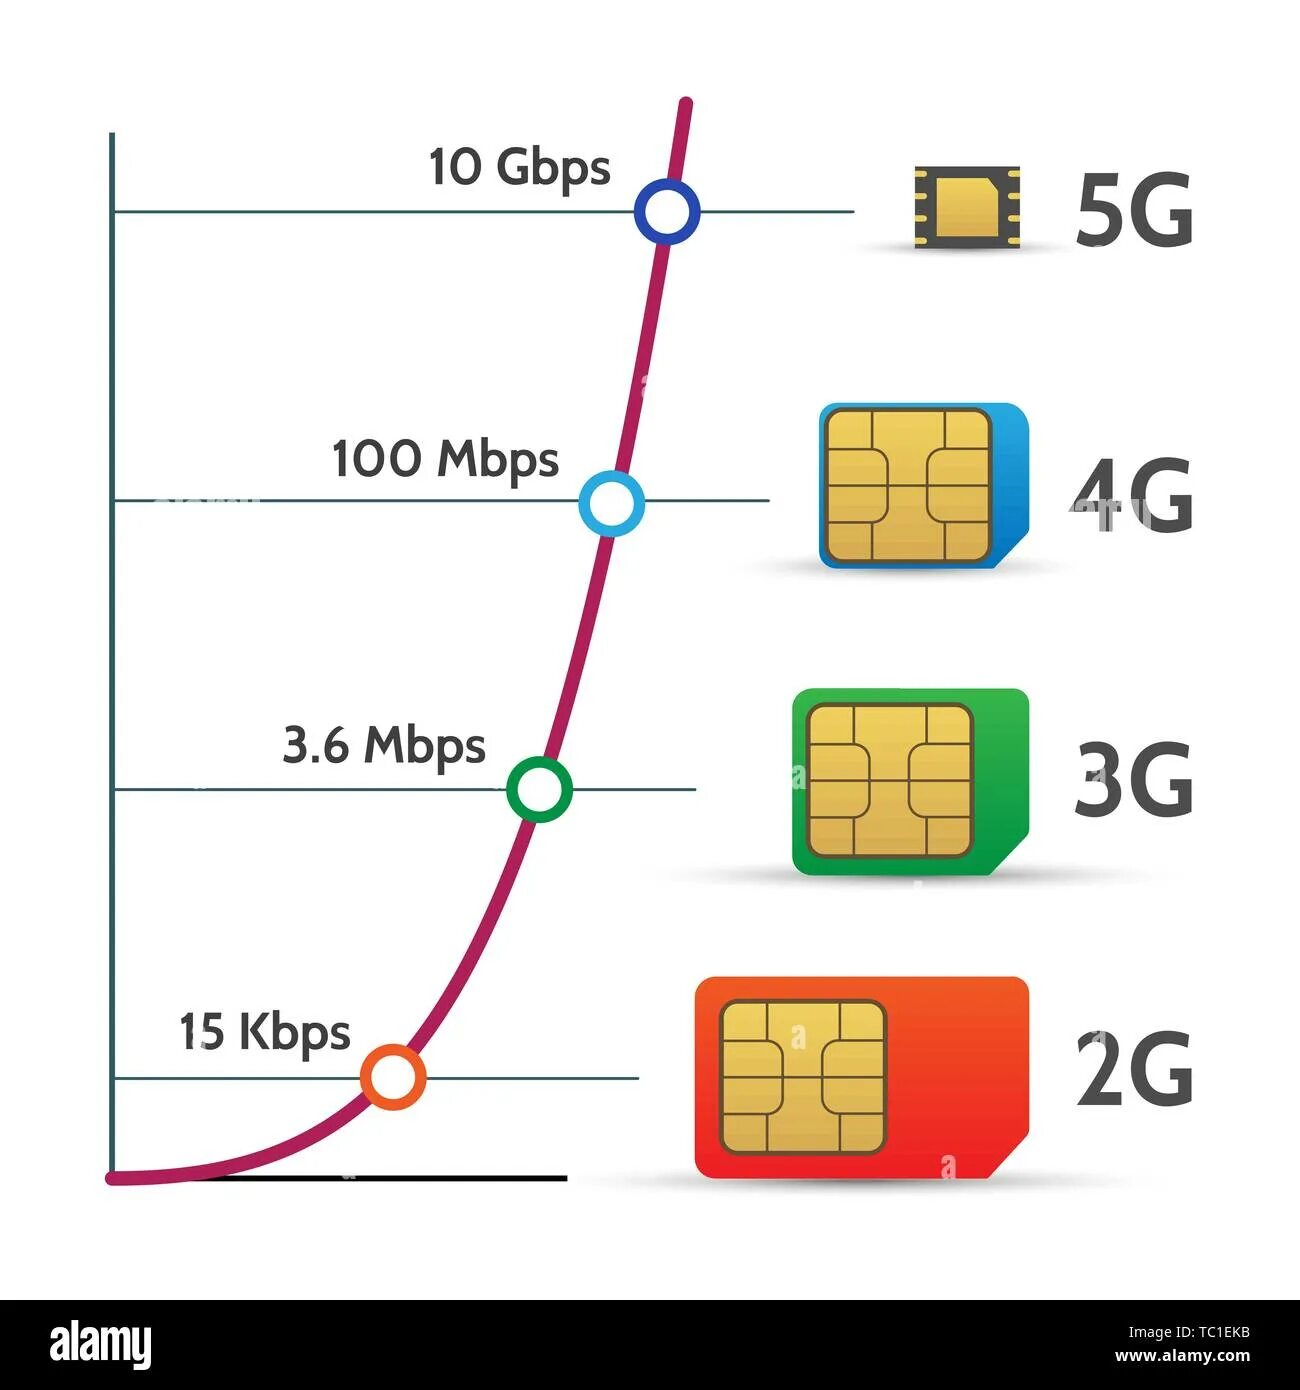 Сим 5 g. SIM карта 5g. Сим карта с 5g сетью. Симка для интернета 5g. Сим карта МТС 5g.